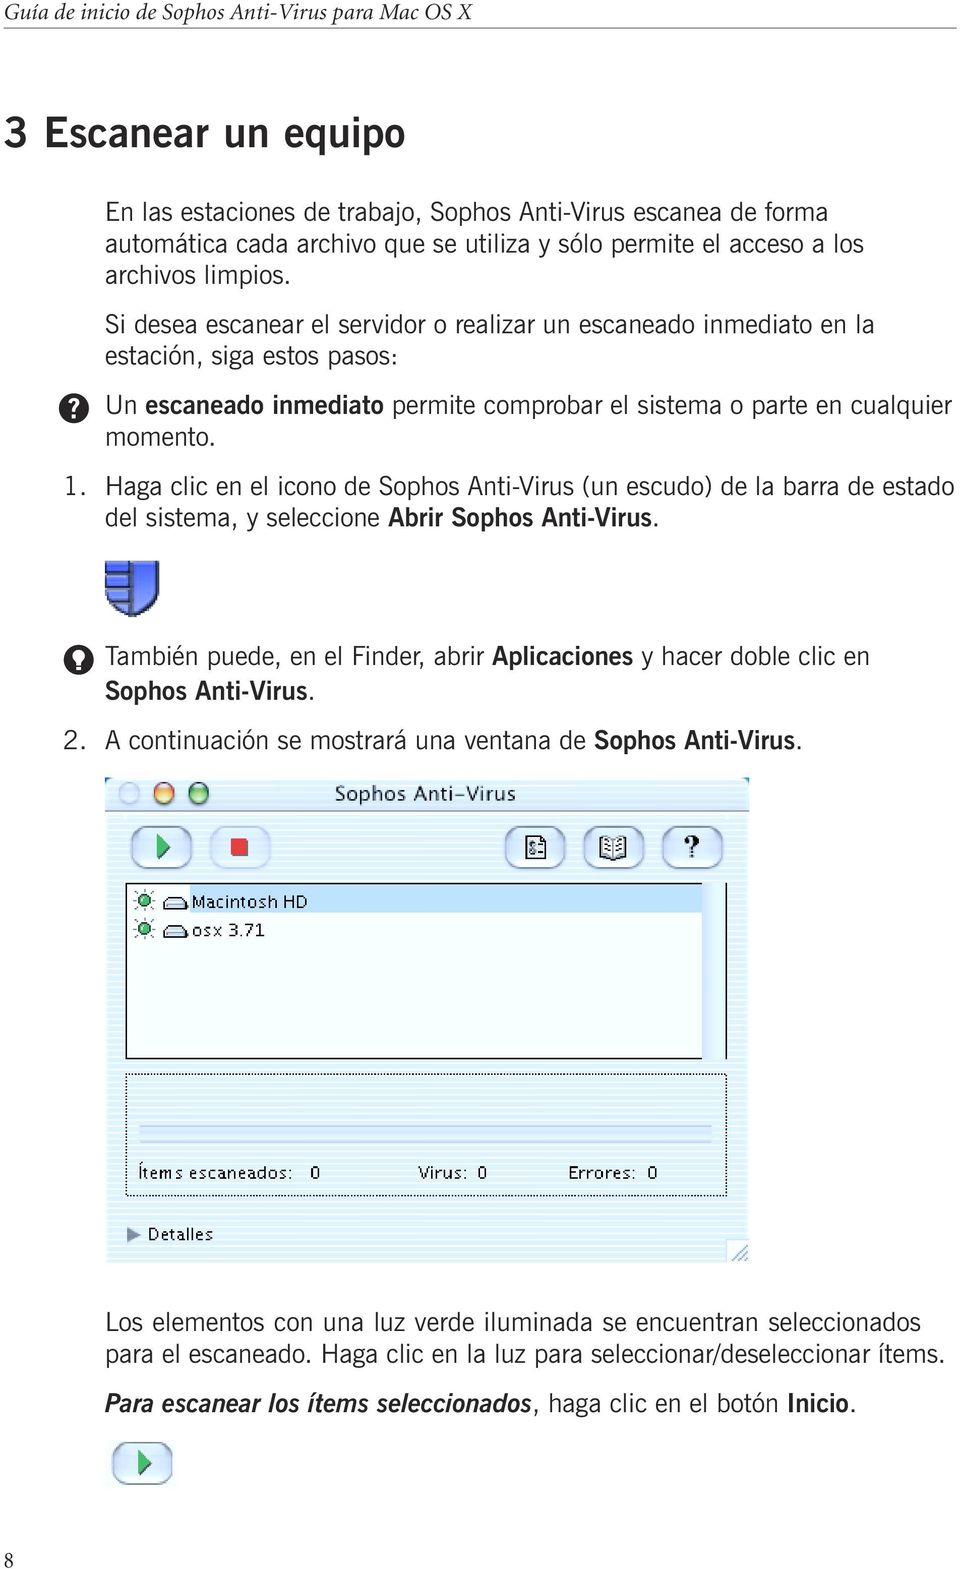 Haga clic en el icono de Sophos Anti-Virus (un escudo) de la barra de estado del sistema, y seleccione Abrir Sophos Anti-Virus.